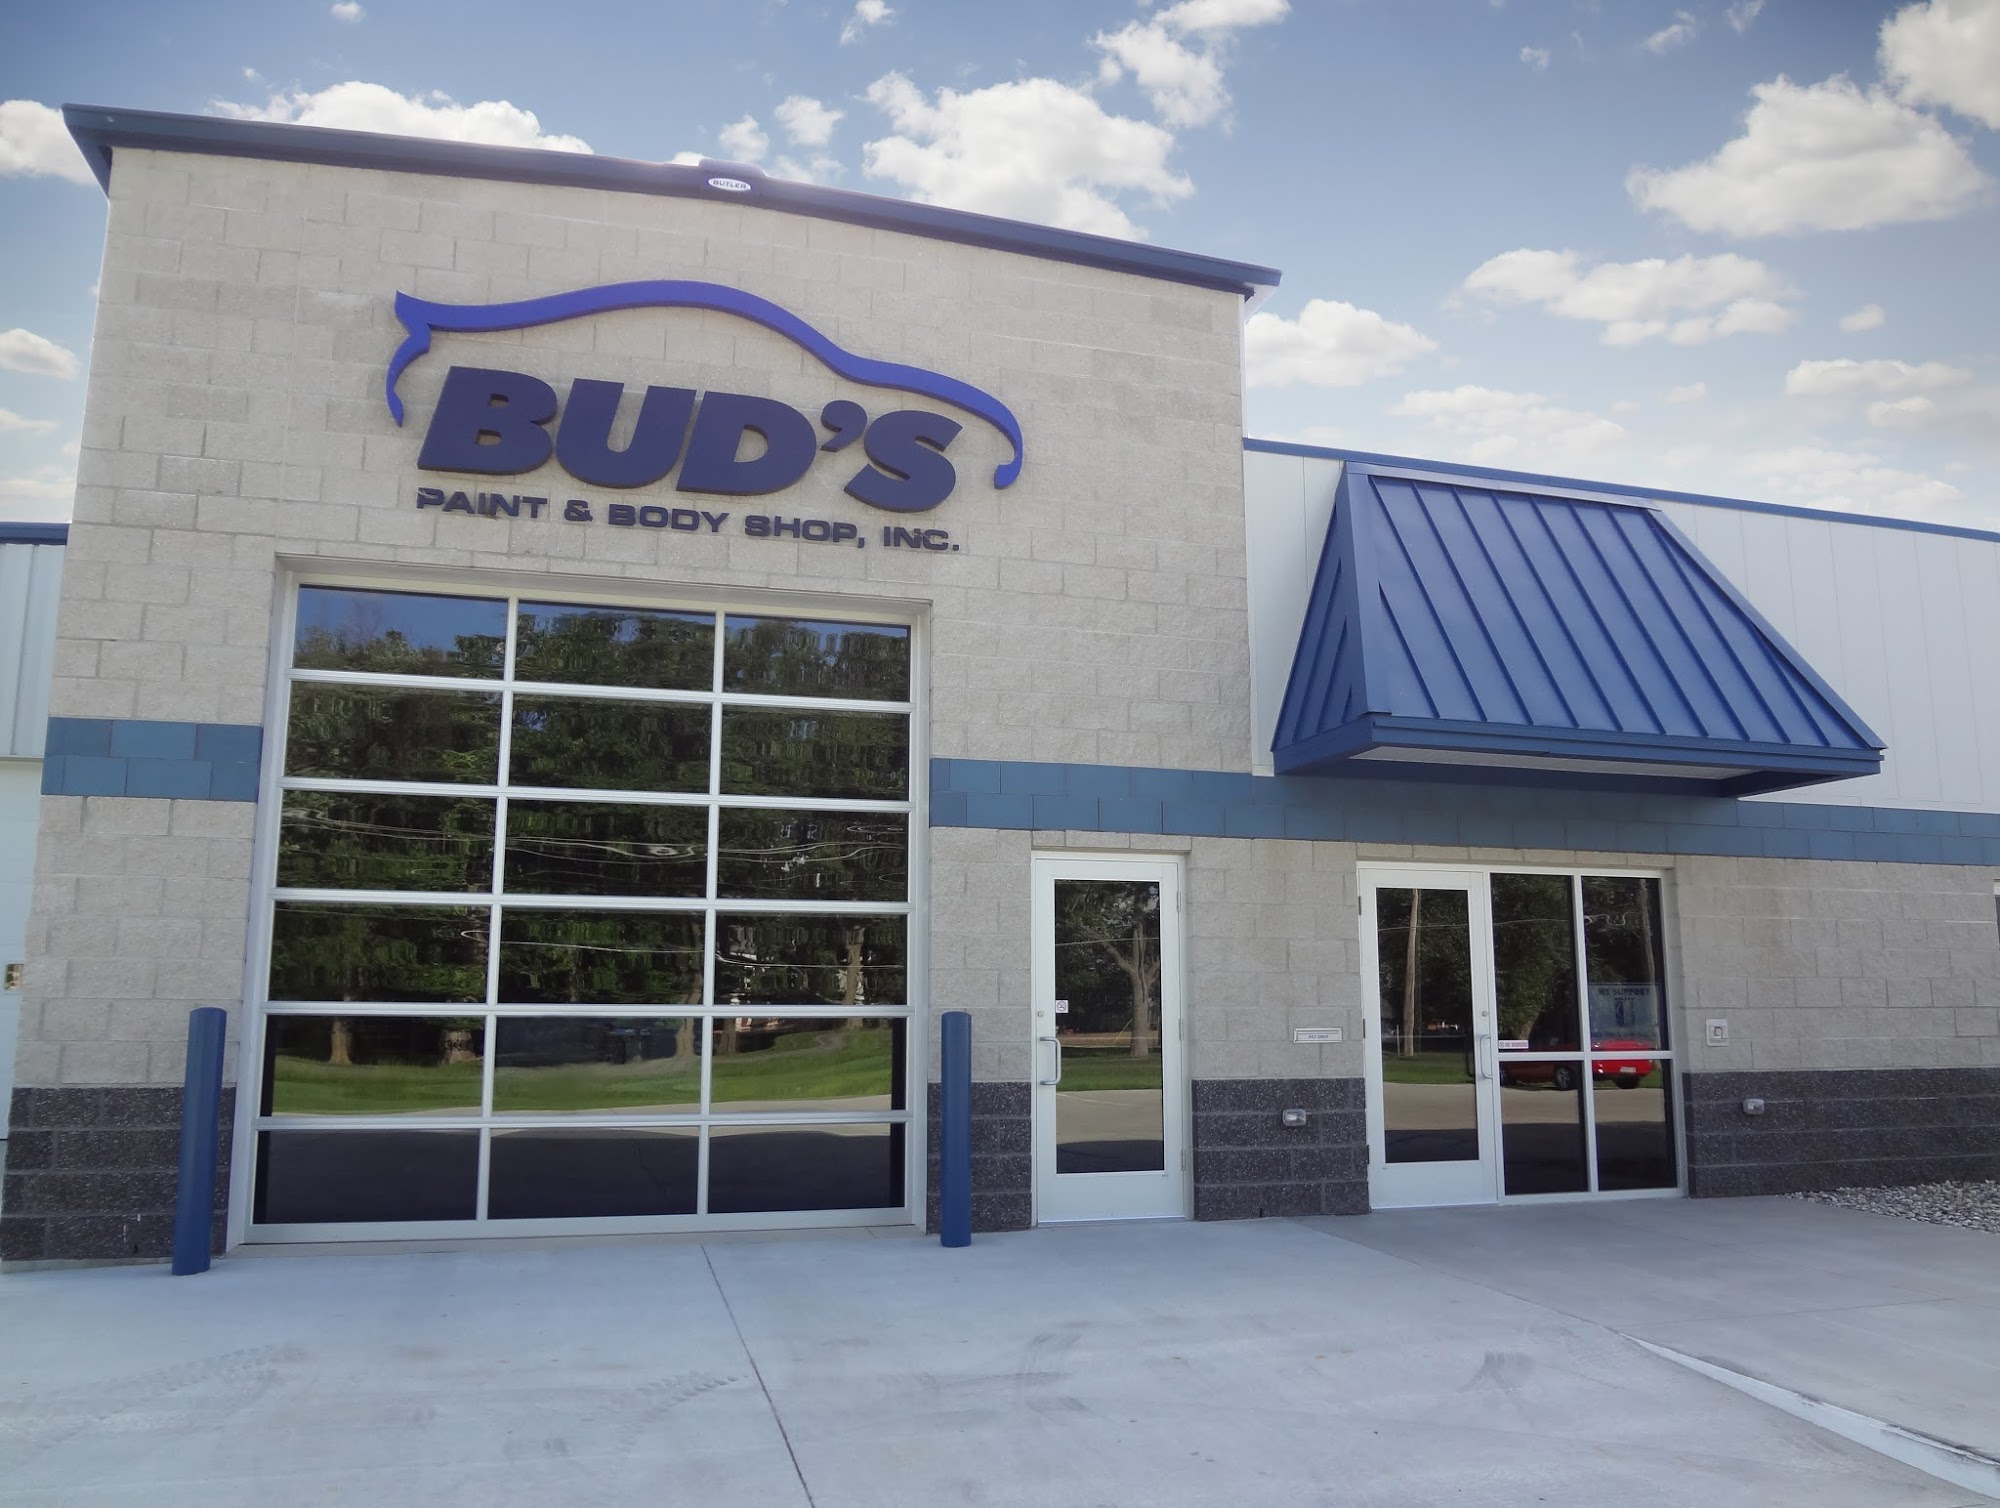 Bud's Paint & Body Shop, Inc.